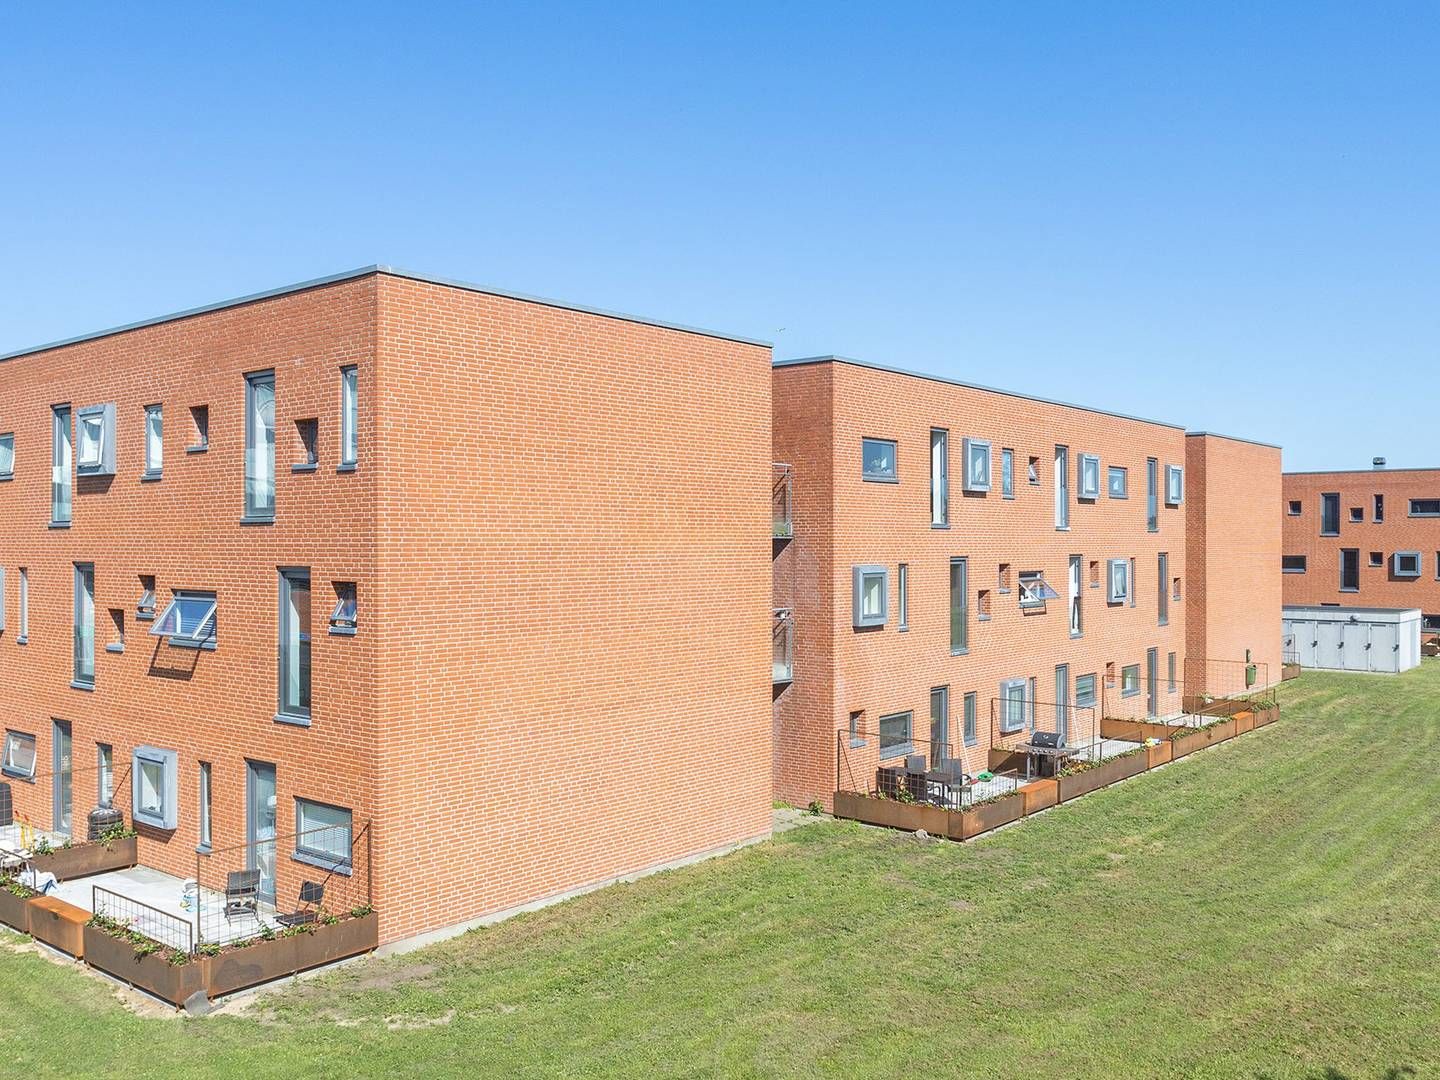 186 lejligheder med tre værelser er en del af et opkøb, som Heimstaden netop har foretaget i Horsens. | Foto: PR / Heimstaden